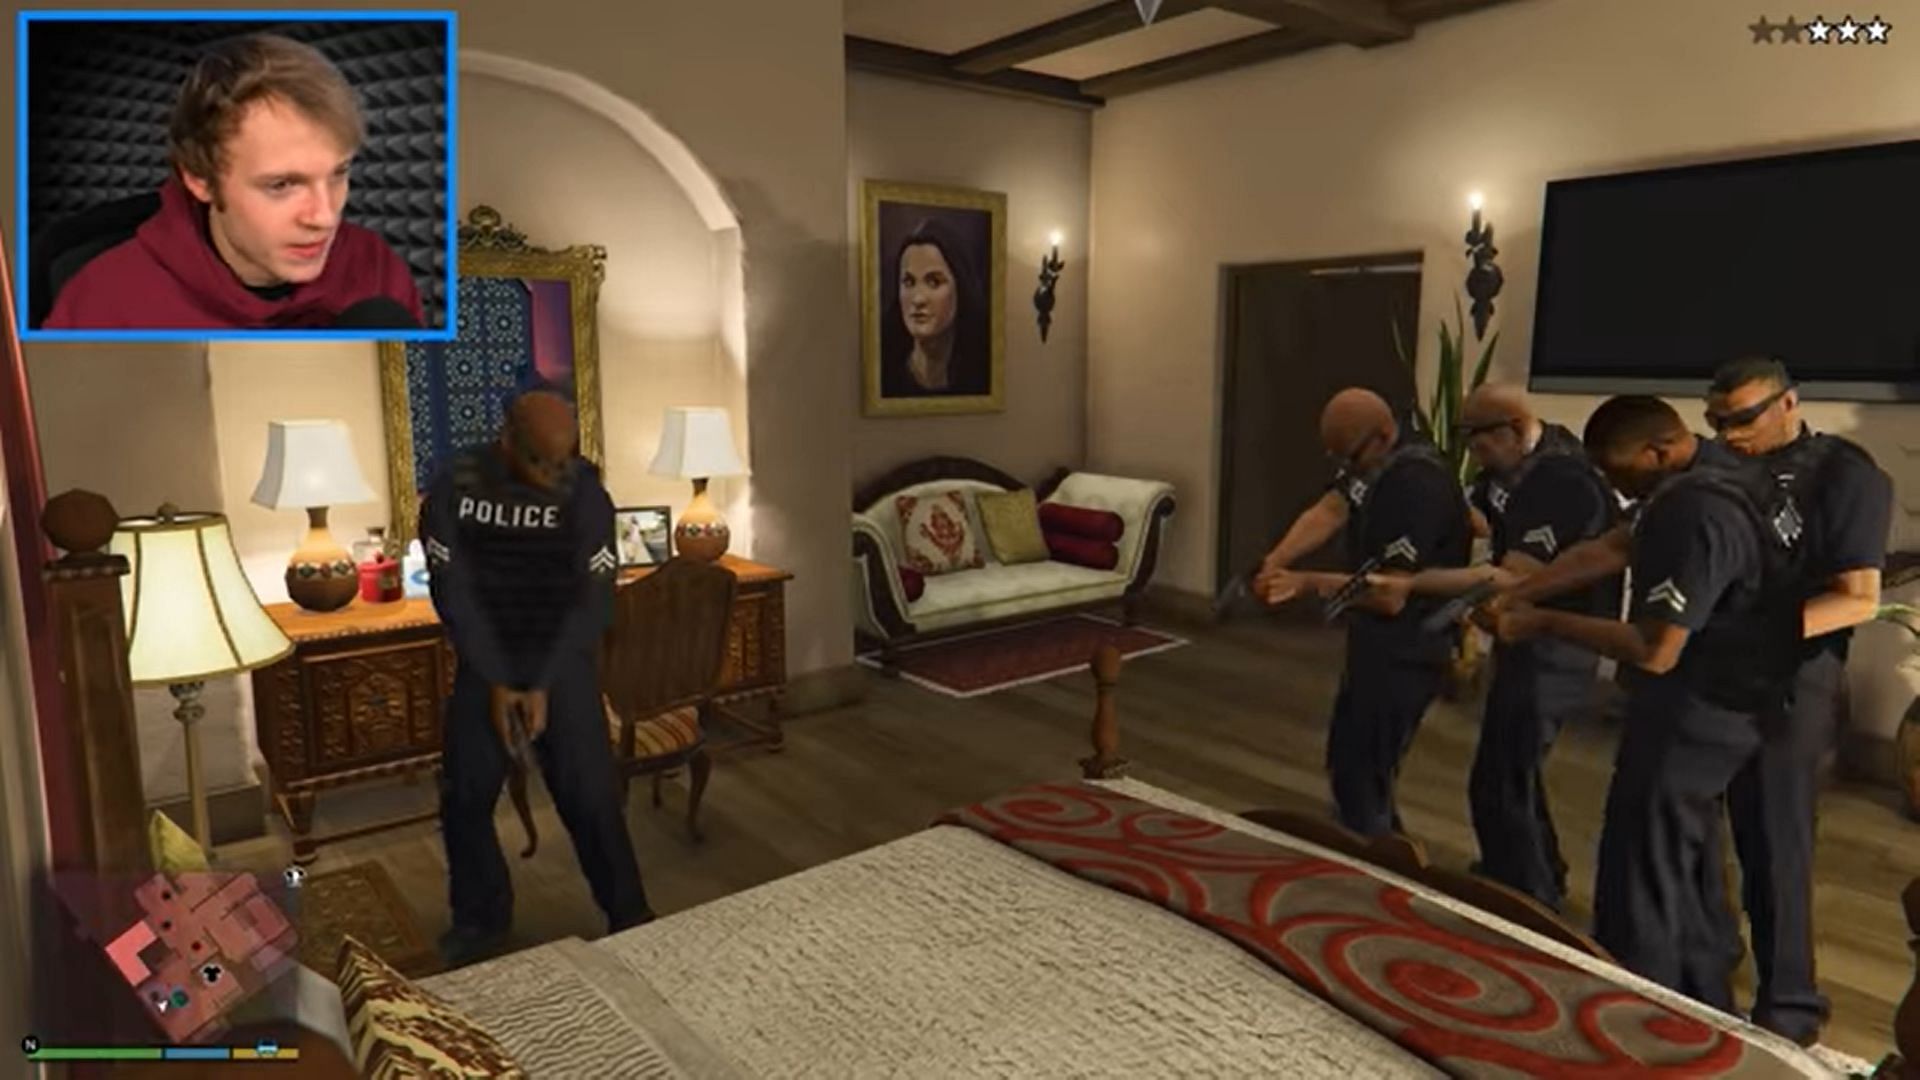 Police are suspicious of Michael&#039;s bed (Image via Sportskeeda)